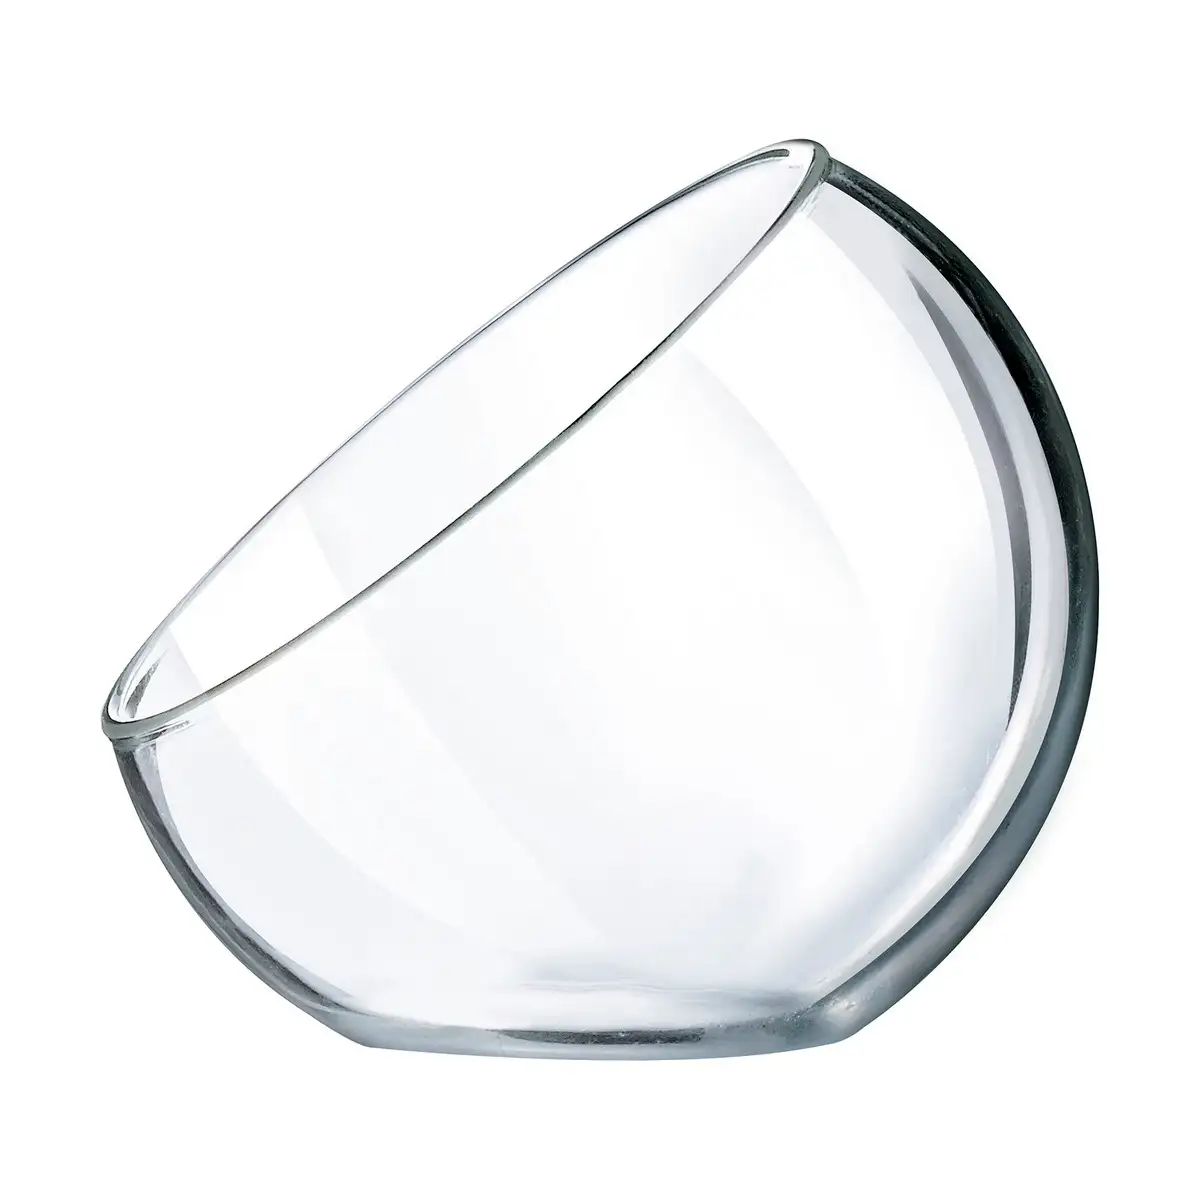 Verre arcoroc versatile coupe de glace transparent verre 6 pieces 120 ml_5967. Découvrez DIAYTAR SENEGAL - Votre Source de Produits Variés et un Service Exceptionnel. Parcourez nos catégories et bénéficiez d'un service client dévoué, prêt à vous guider à chaque étape.